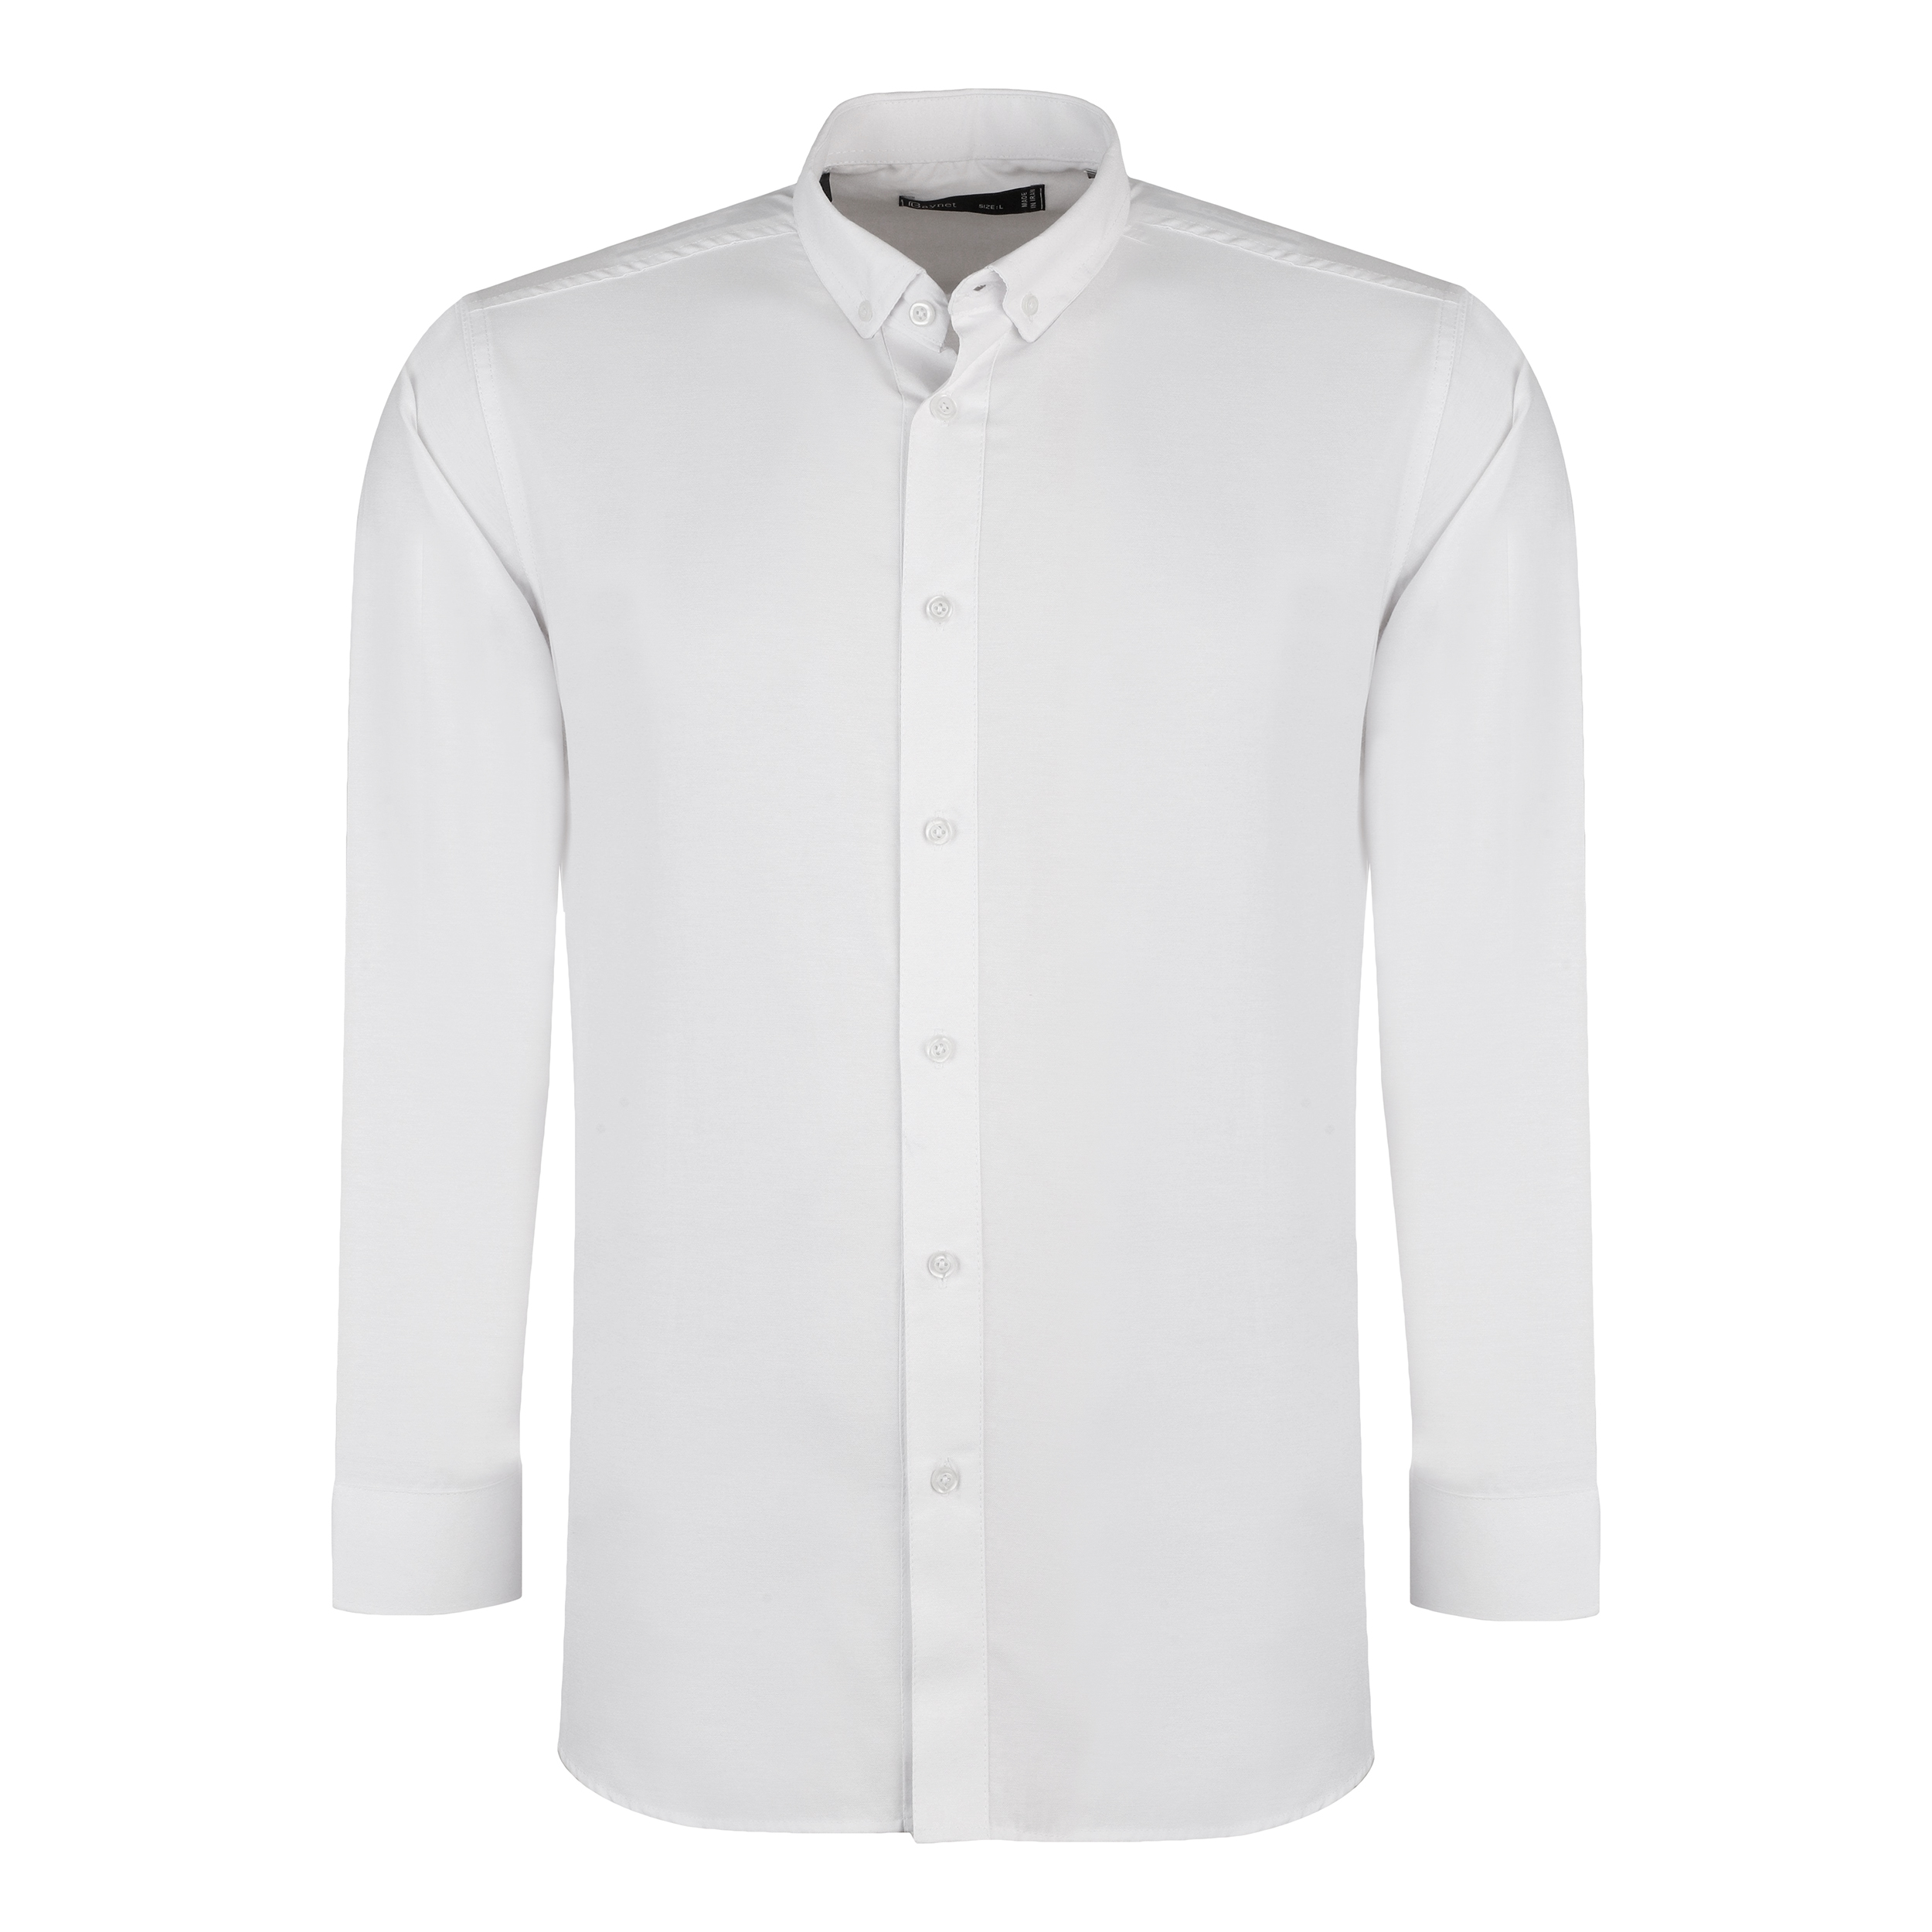 پیراهن آستین بلند مردانه باینت مدل 2261721 رنگ سفید